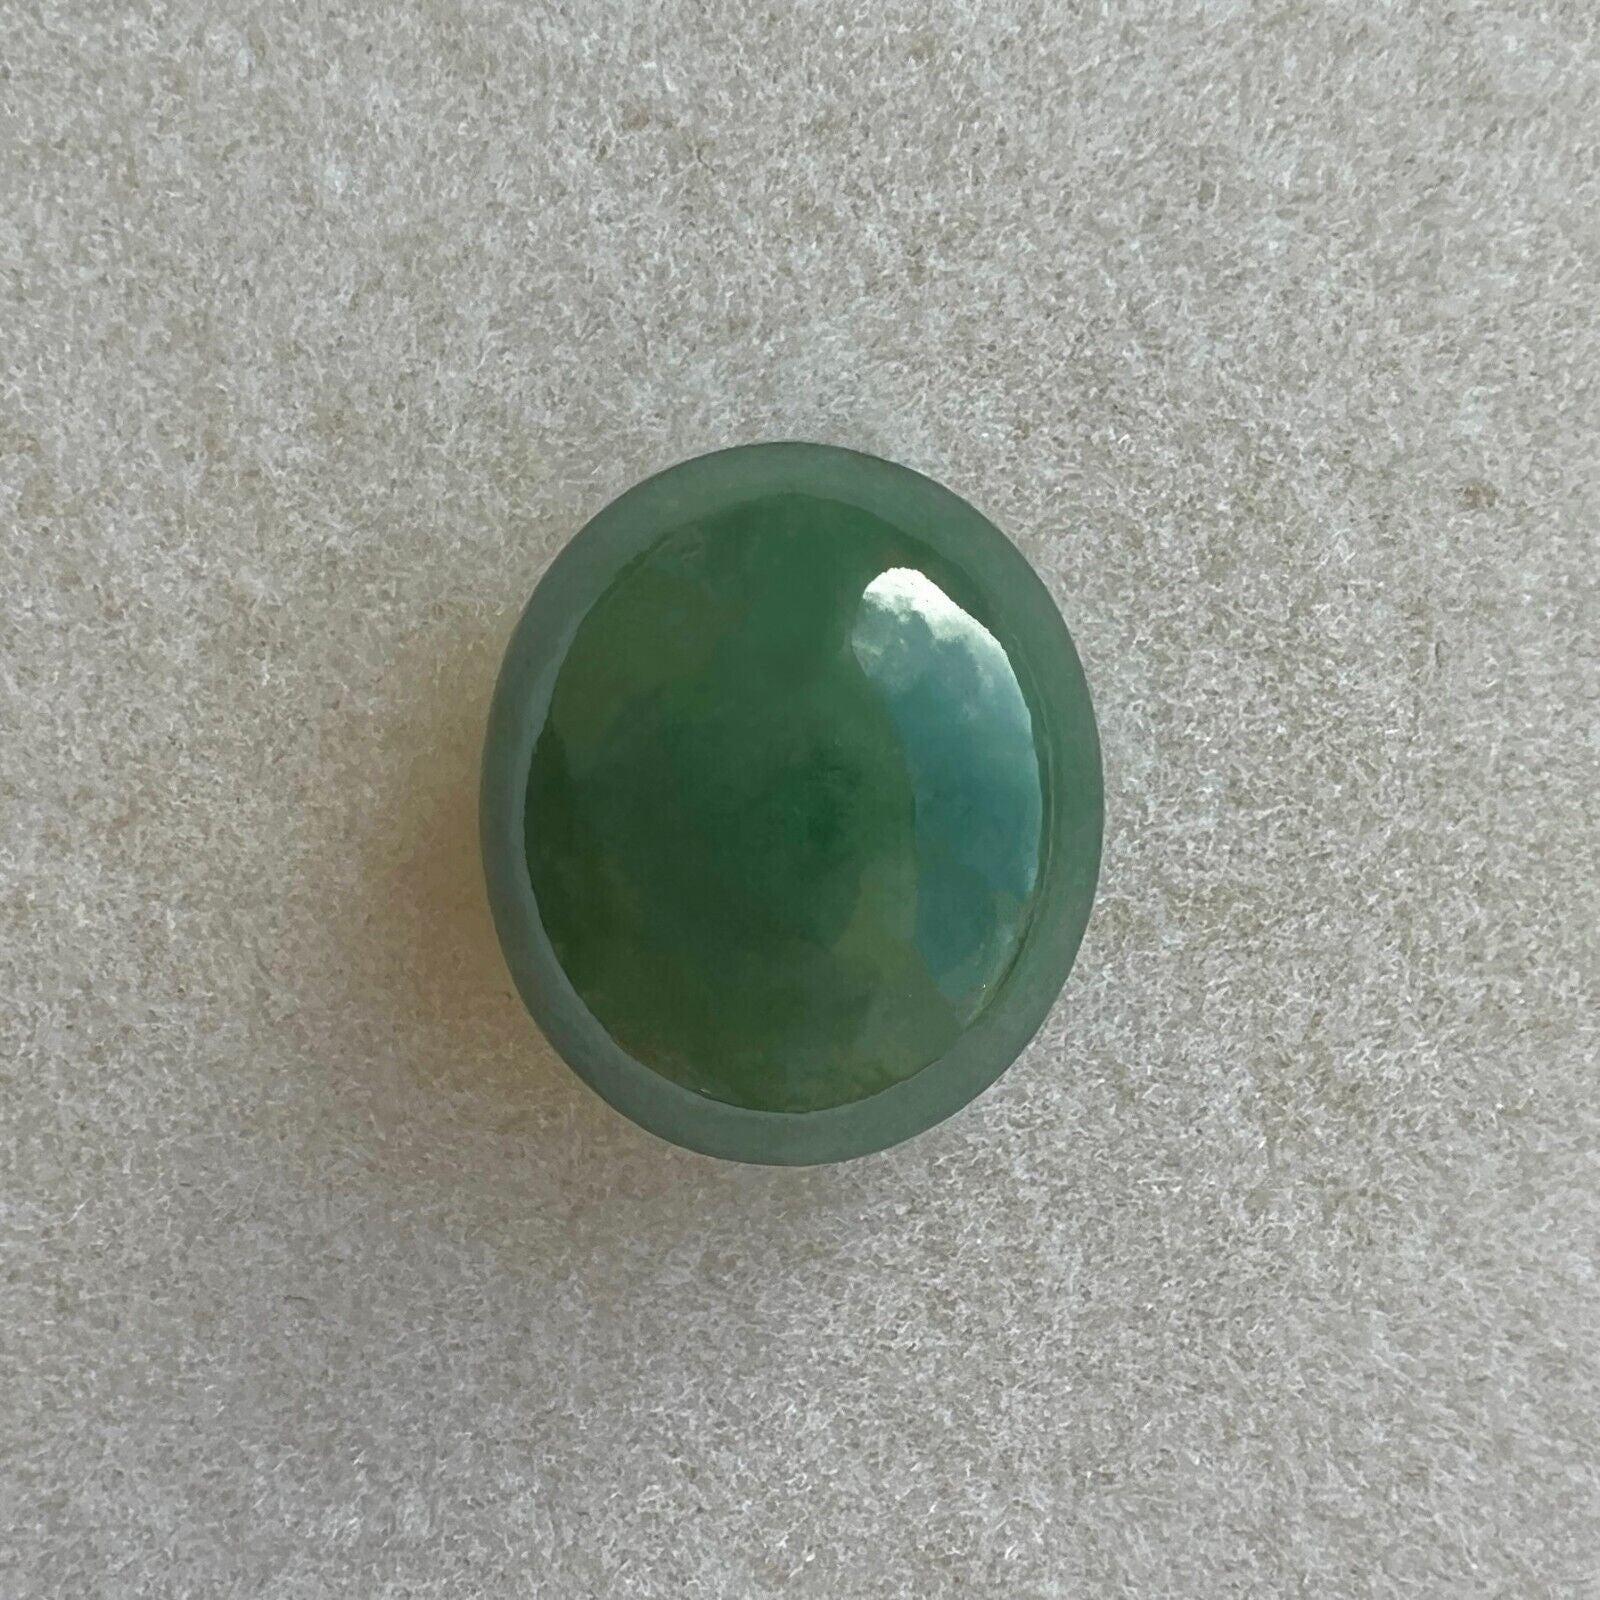 Taille ovale IGI Certified 6.67Ct Natural Green Jadeite Jade 'A' Grade Oval Cabochon Gem en vente